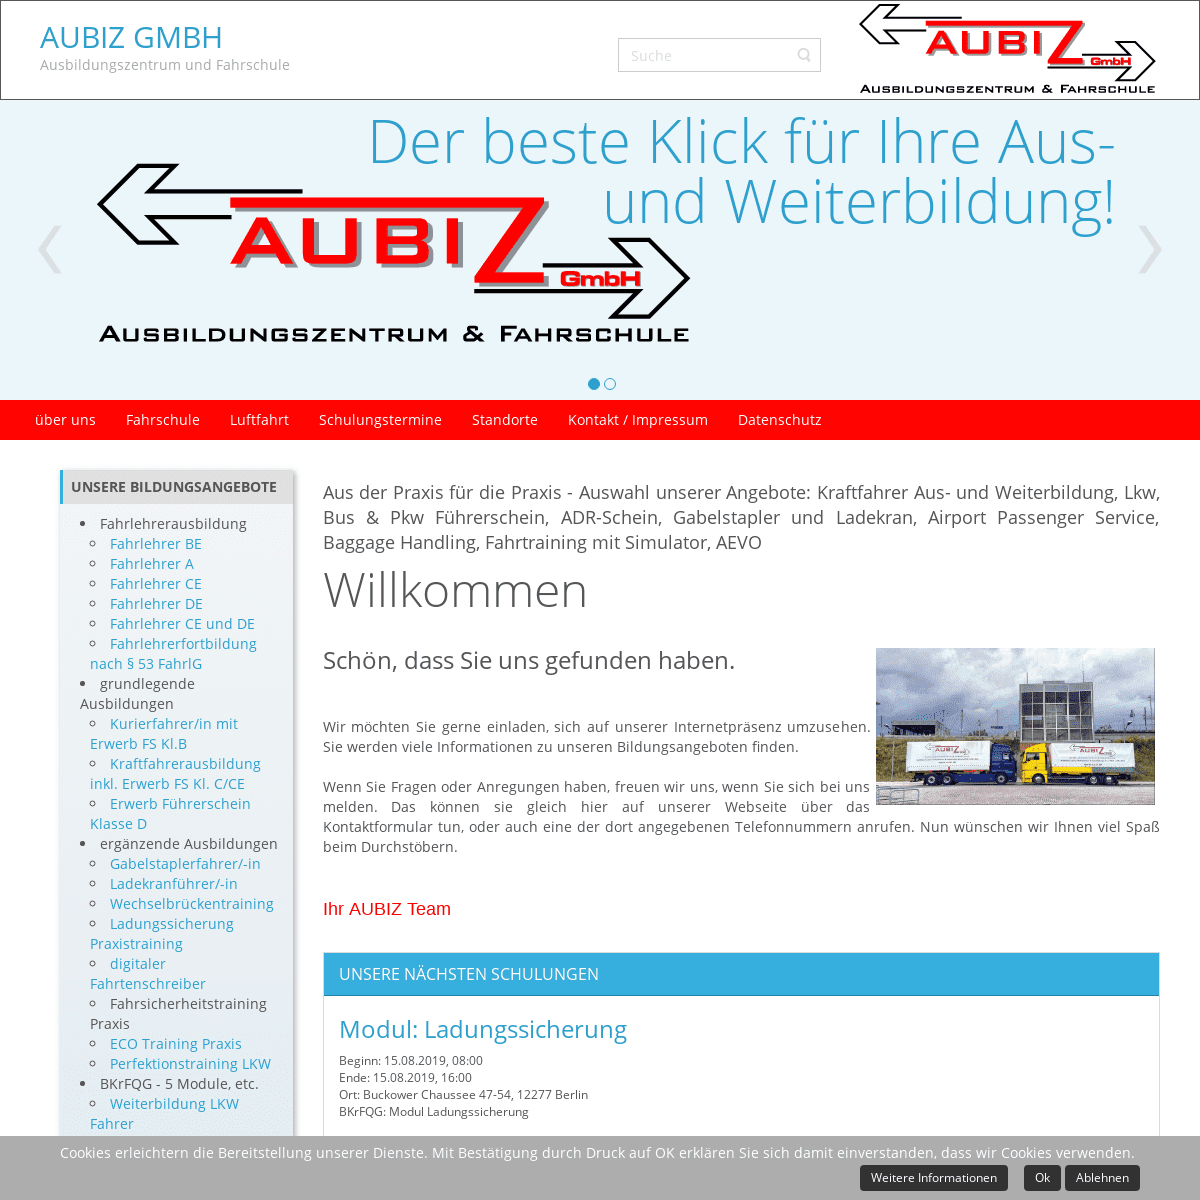 AUBIZ GmbH - Ausbildungszentrum und Fahrschule